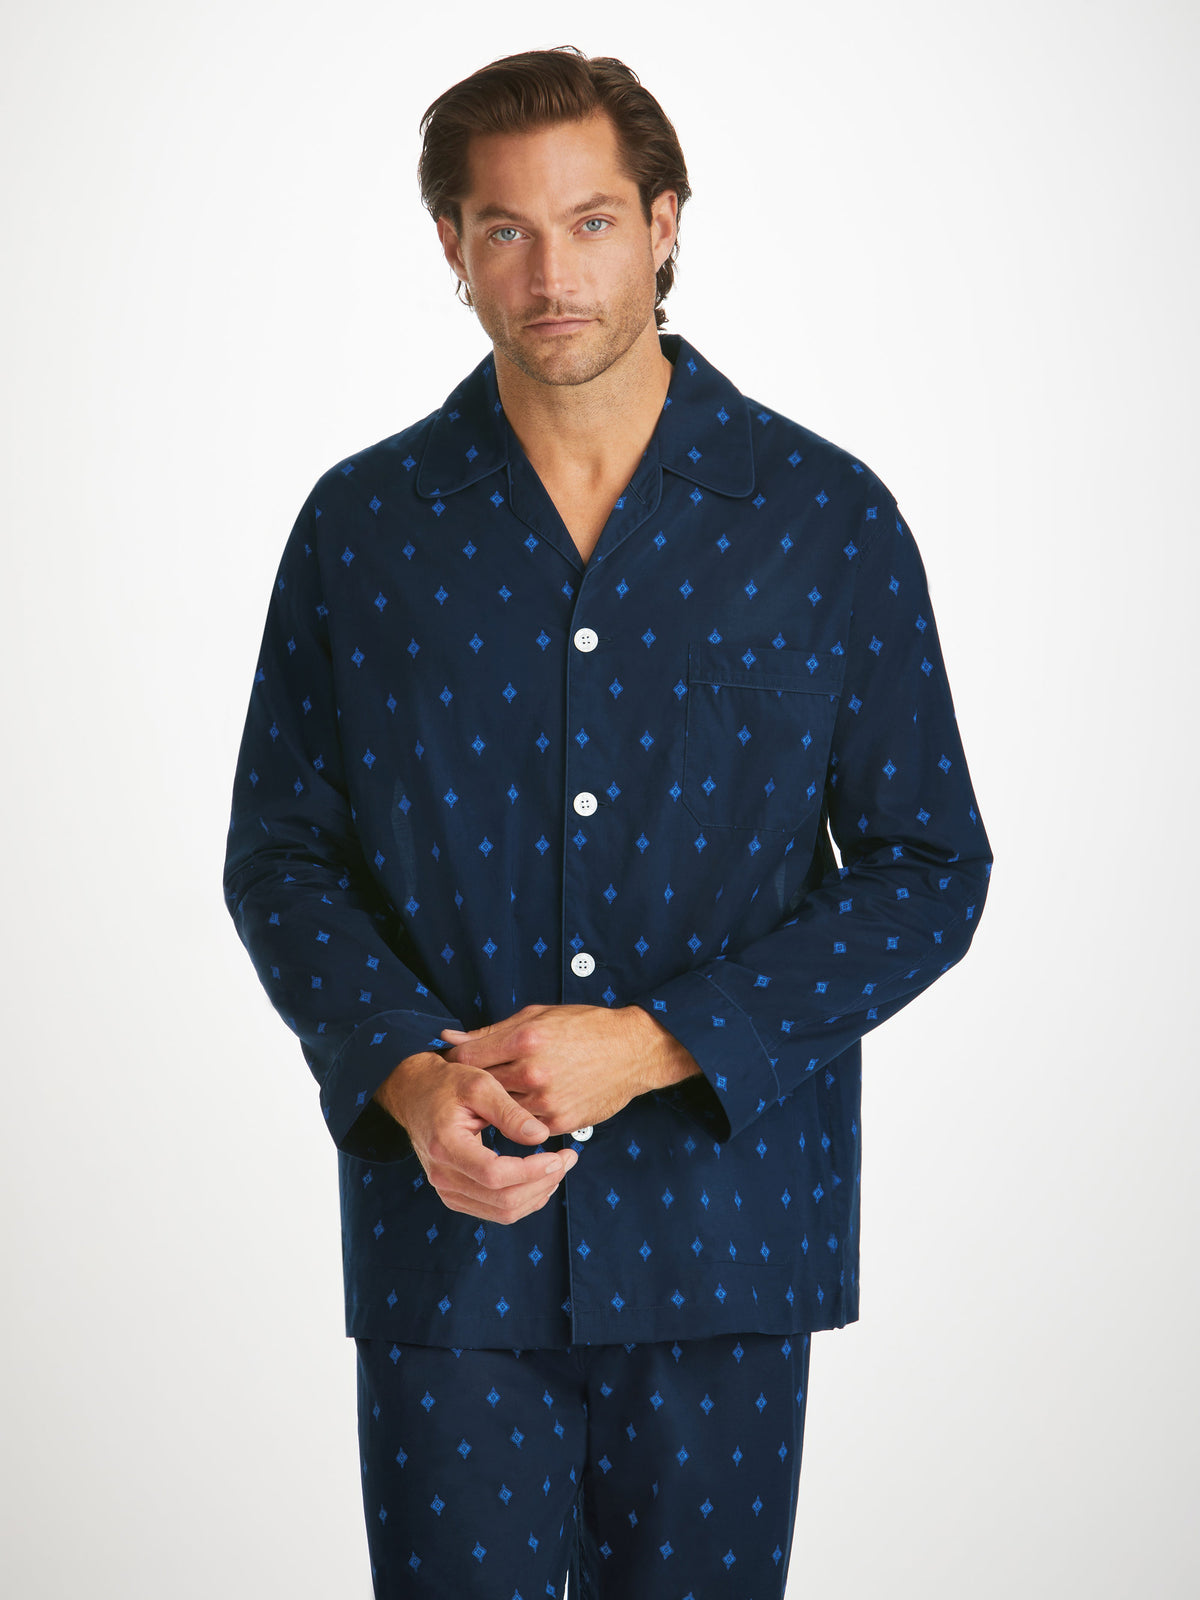 Men's Classic Fit Pyjamas Nelson 98 Cotton Batiste Navy